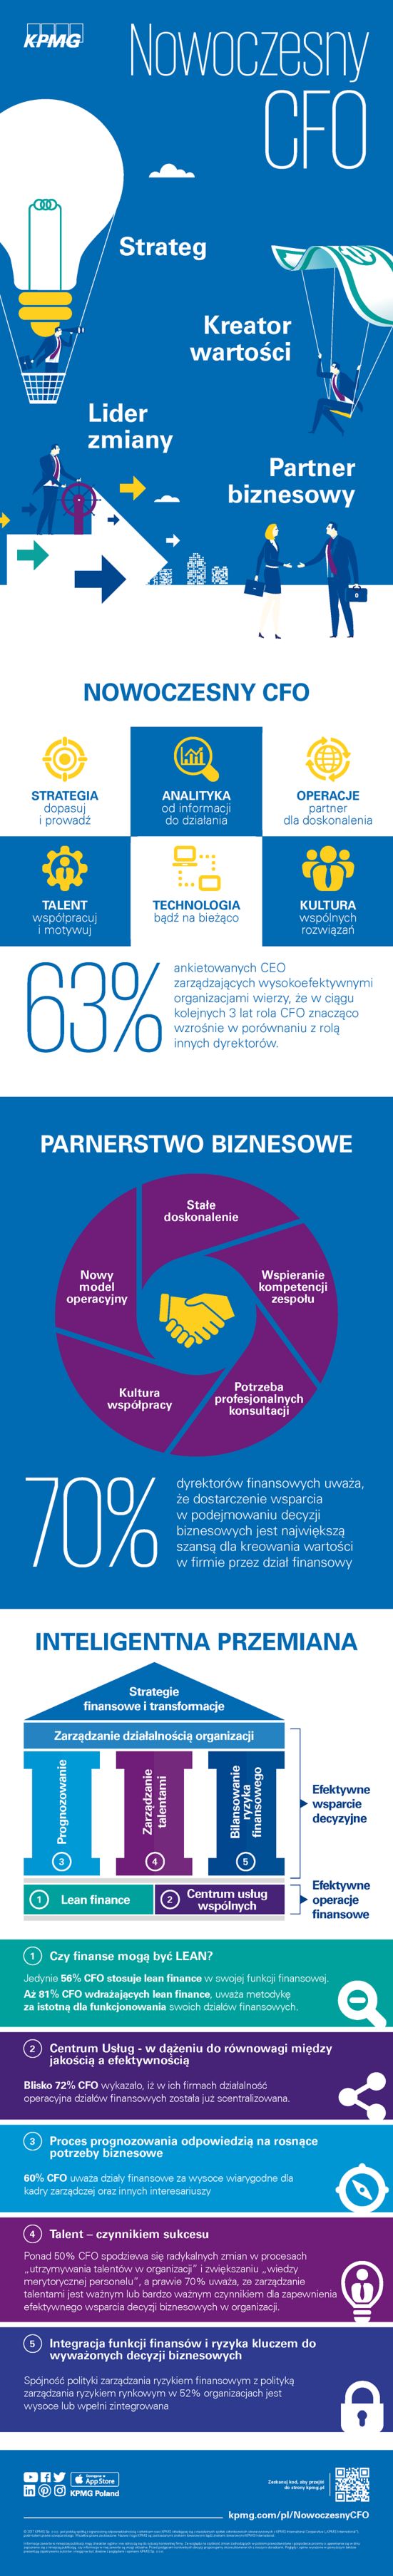 Infografika - Nowoczesny CFO